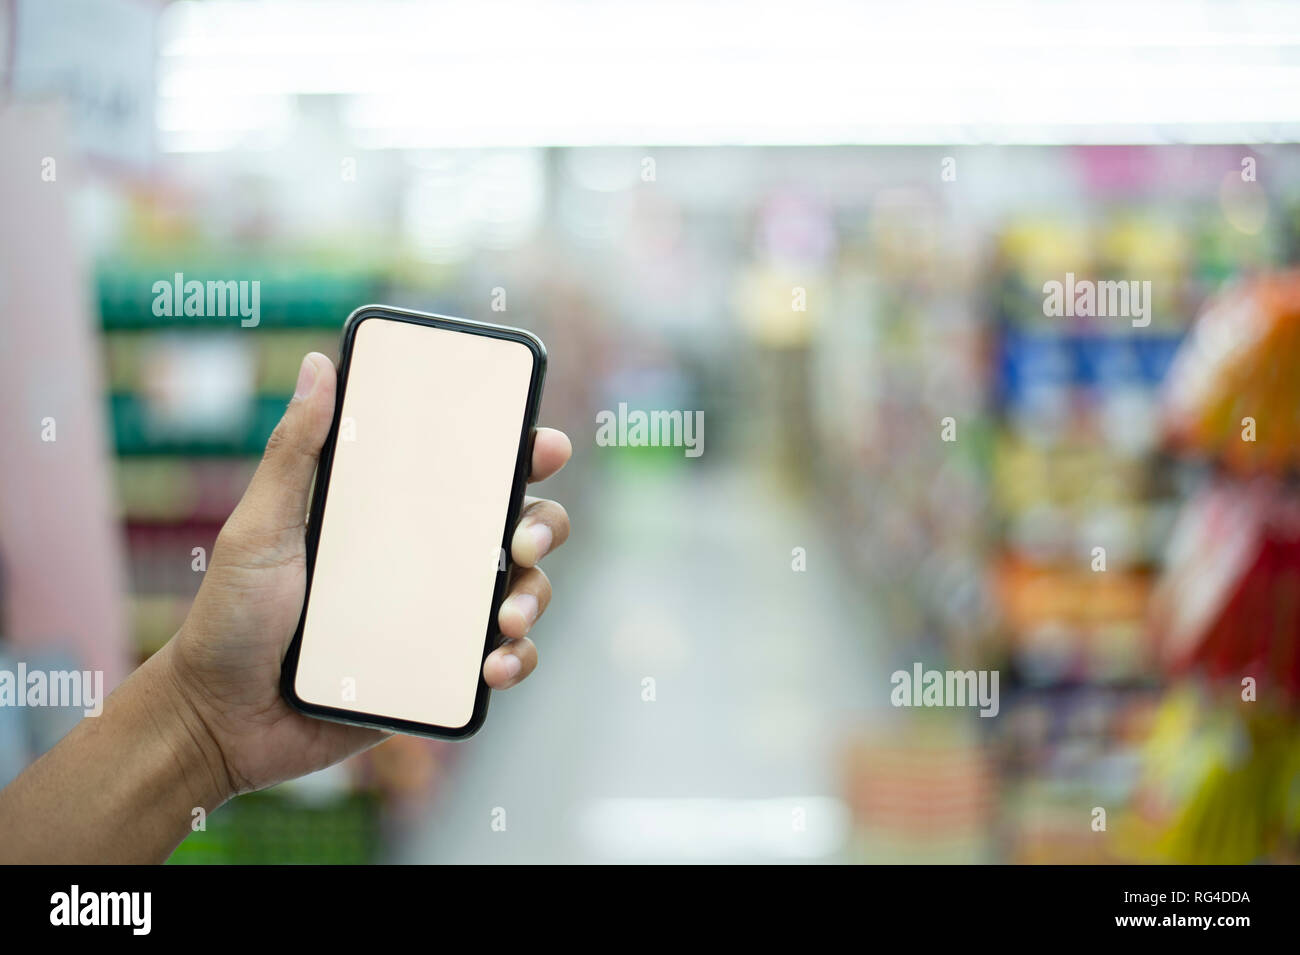 Mann tun Einkaufen im Supermarkt und Scannen eines Barcodes können Sie über ihr Smartphone, Technologie und Einzelhandel Konzept - Bild Stockfoto